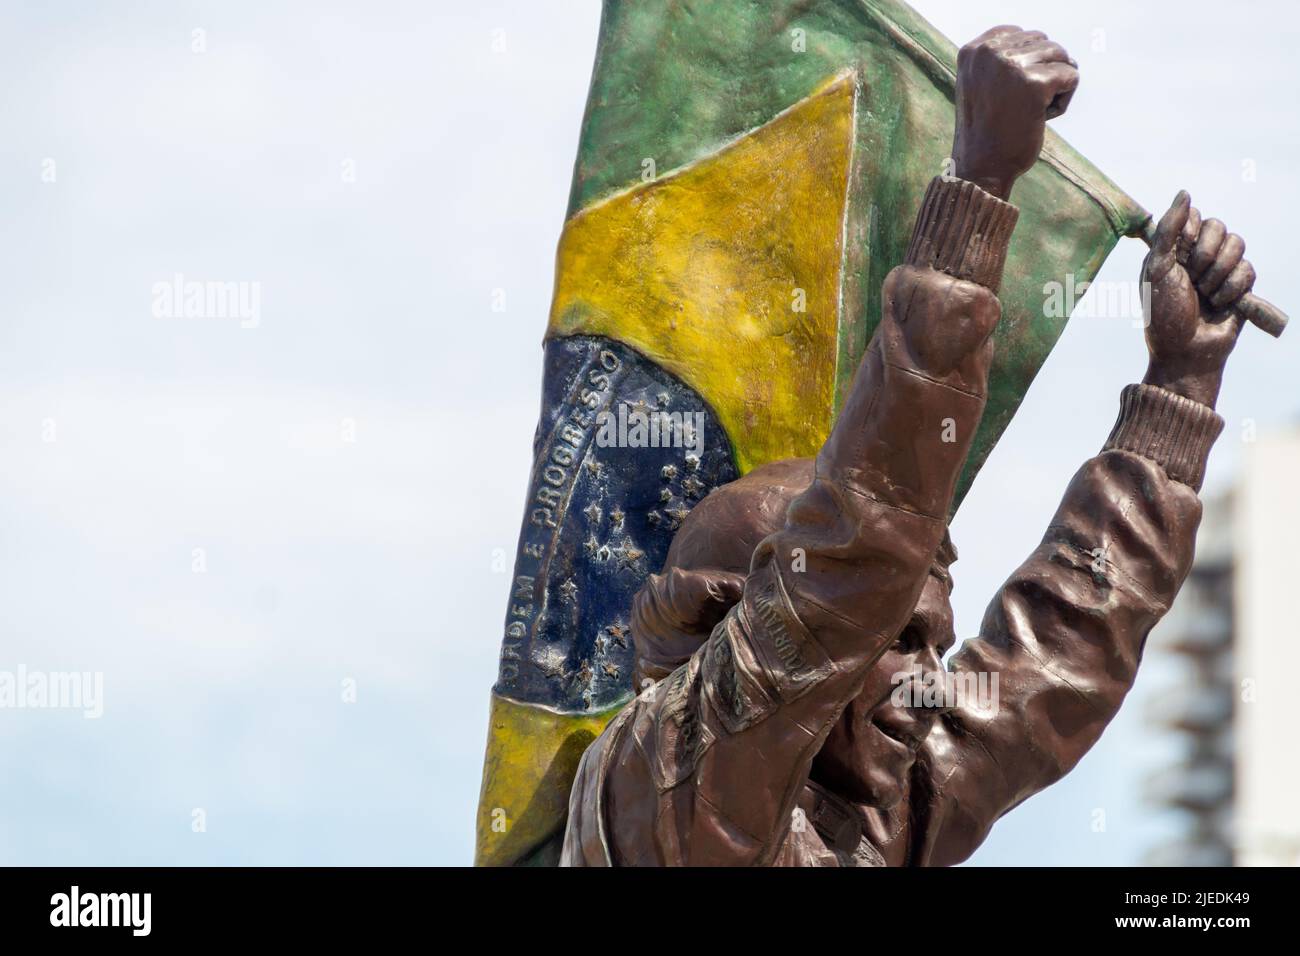 statue of pilot Ayrton Senna in Rio de Janeiro, Brazil - April 19, 2020 : Statue of pilot Ayrton Senna in Copacabana in Rio de Janeiro. Stock Photo